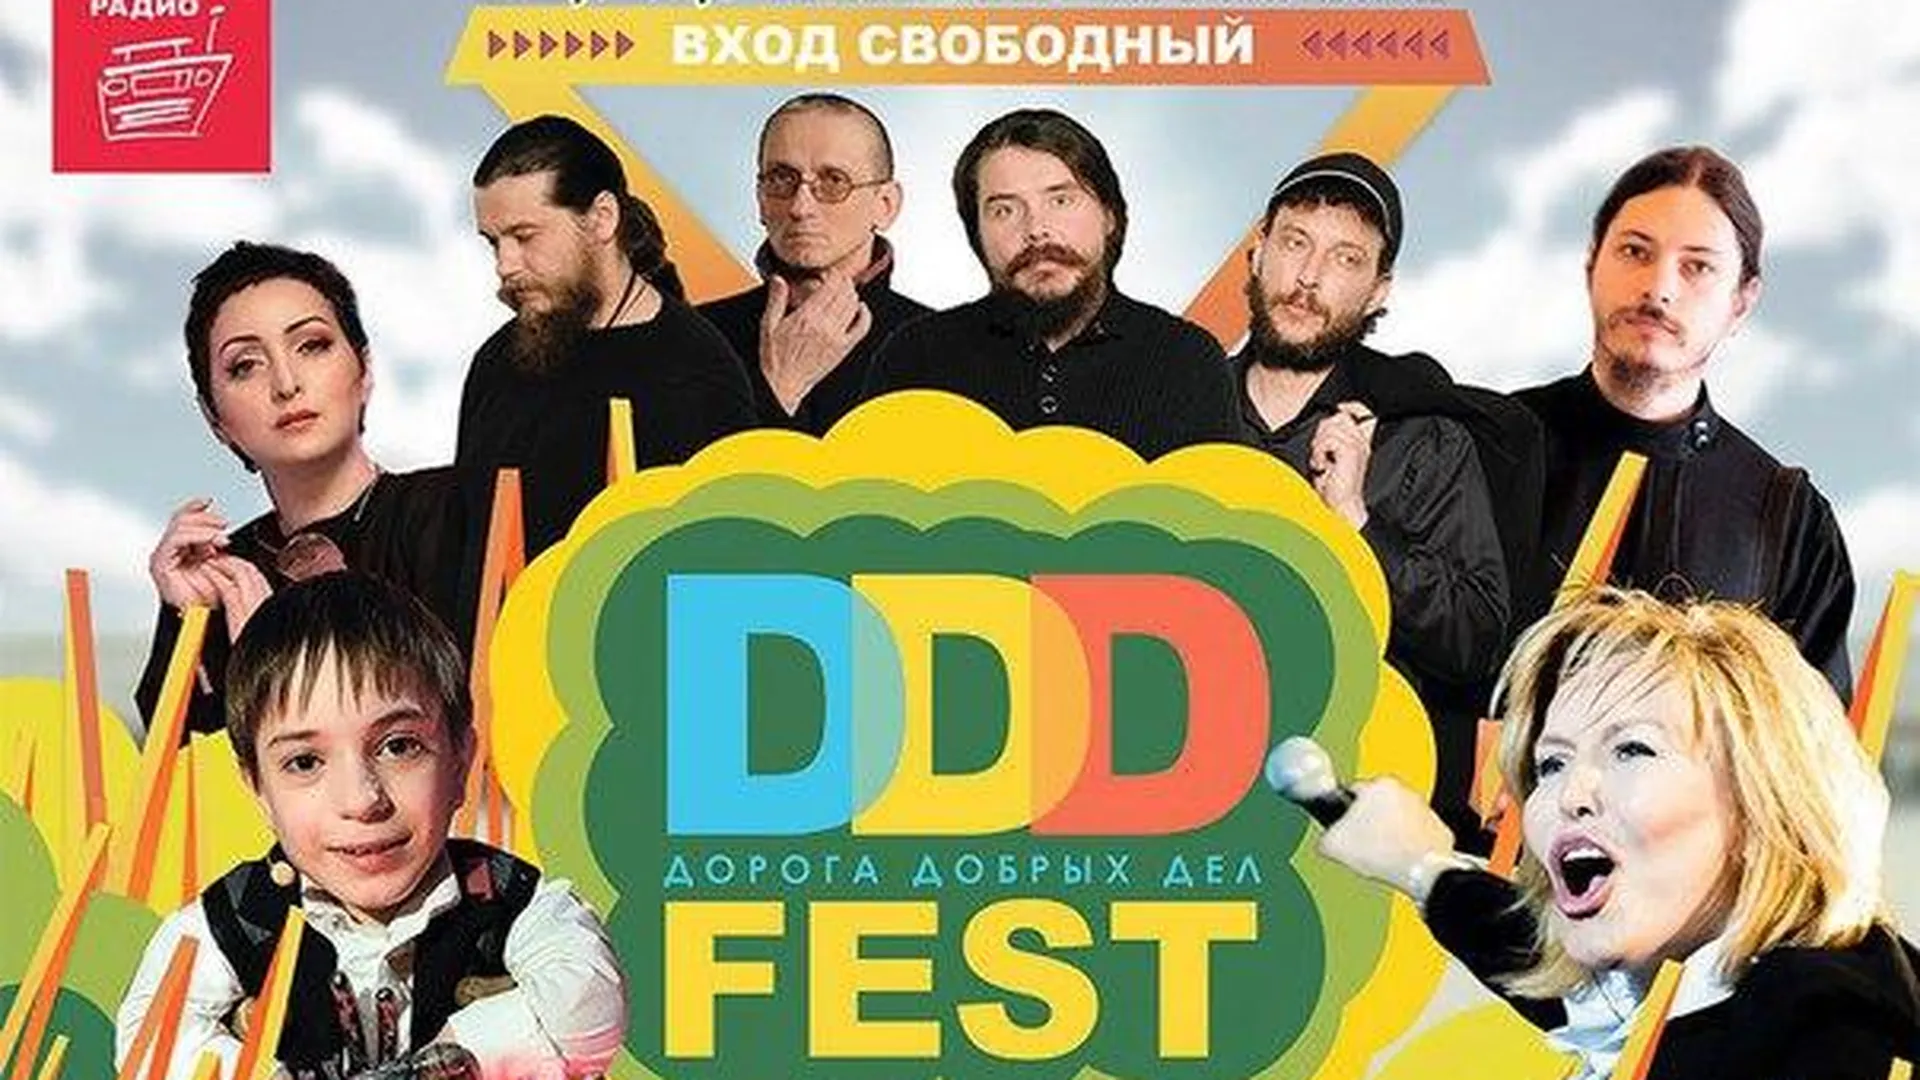 Фестиваль «Дорога добрых дел» ВКонтакте